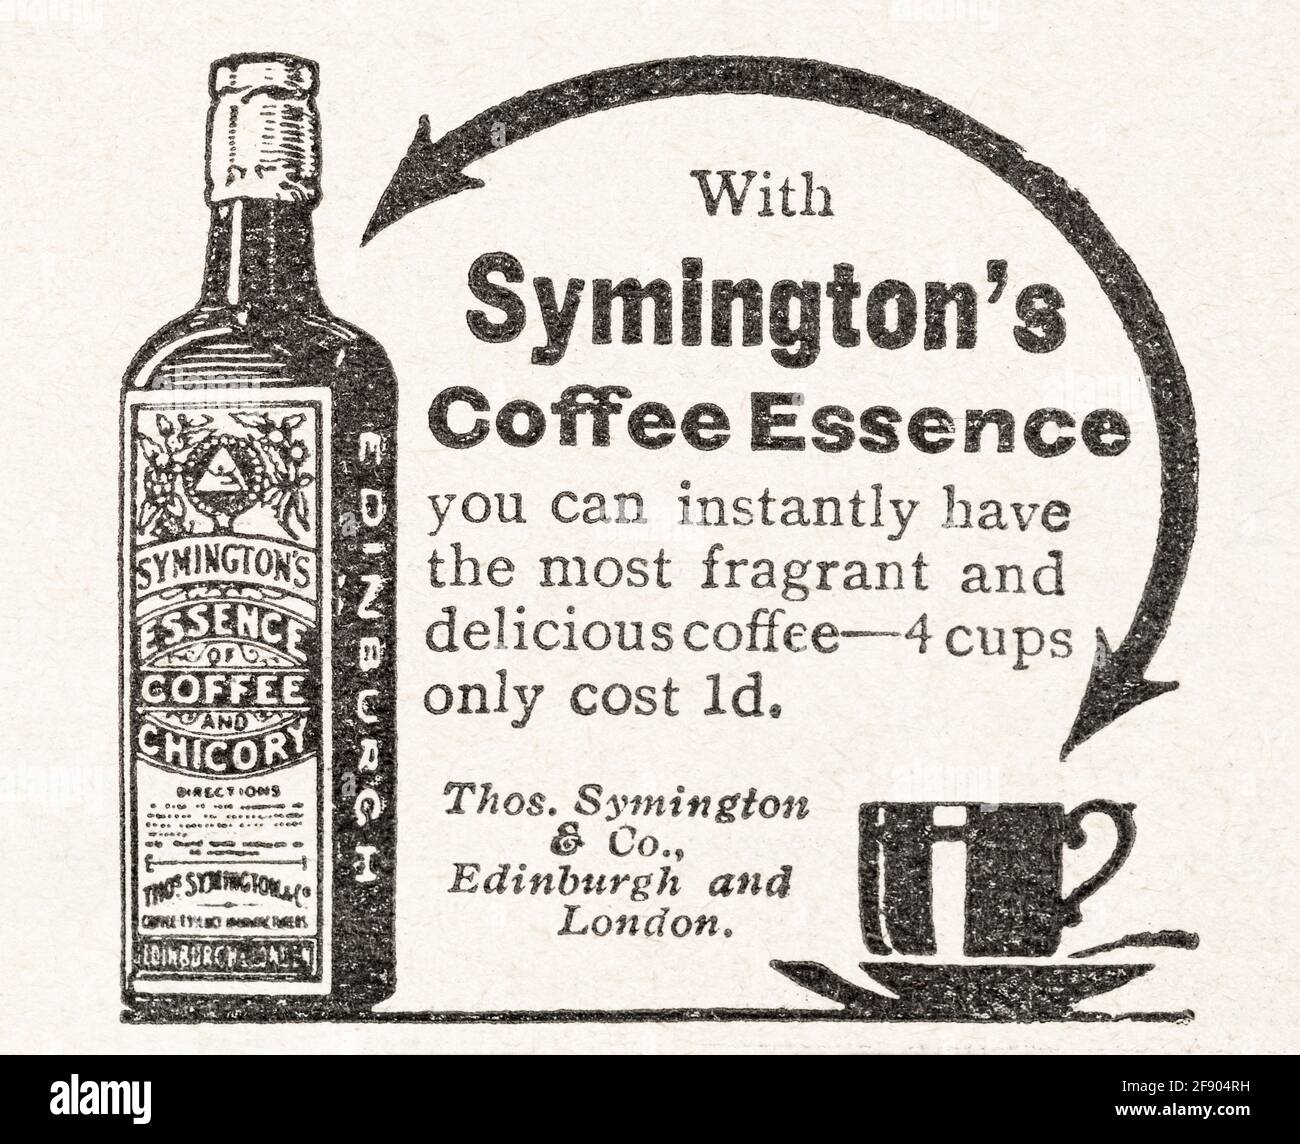 Alte Vintage Edwardian Magazin Anzeige für Symingtons Kaffee Essenz von 1911. Geschichte der Werbung, Geschichte der Kaffeemarken. Stockfoto